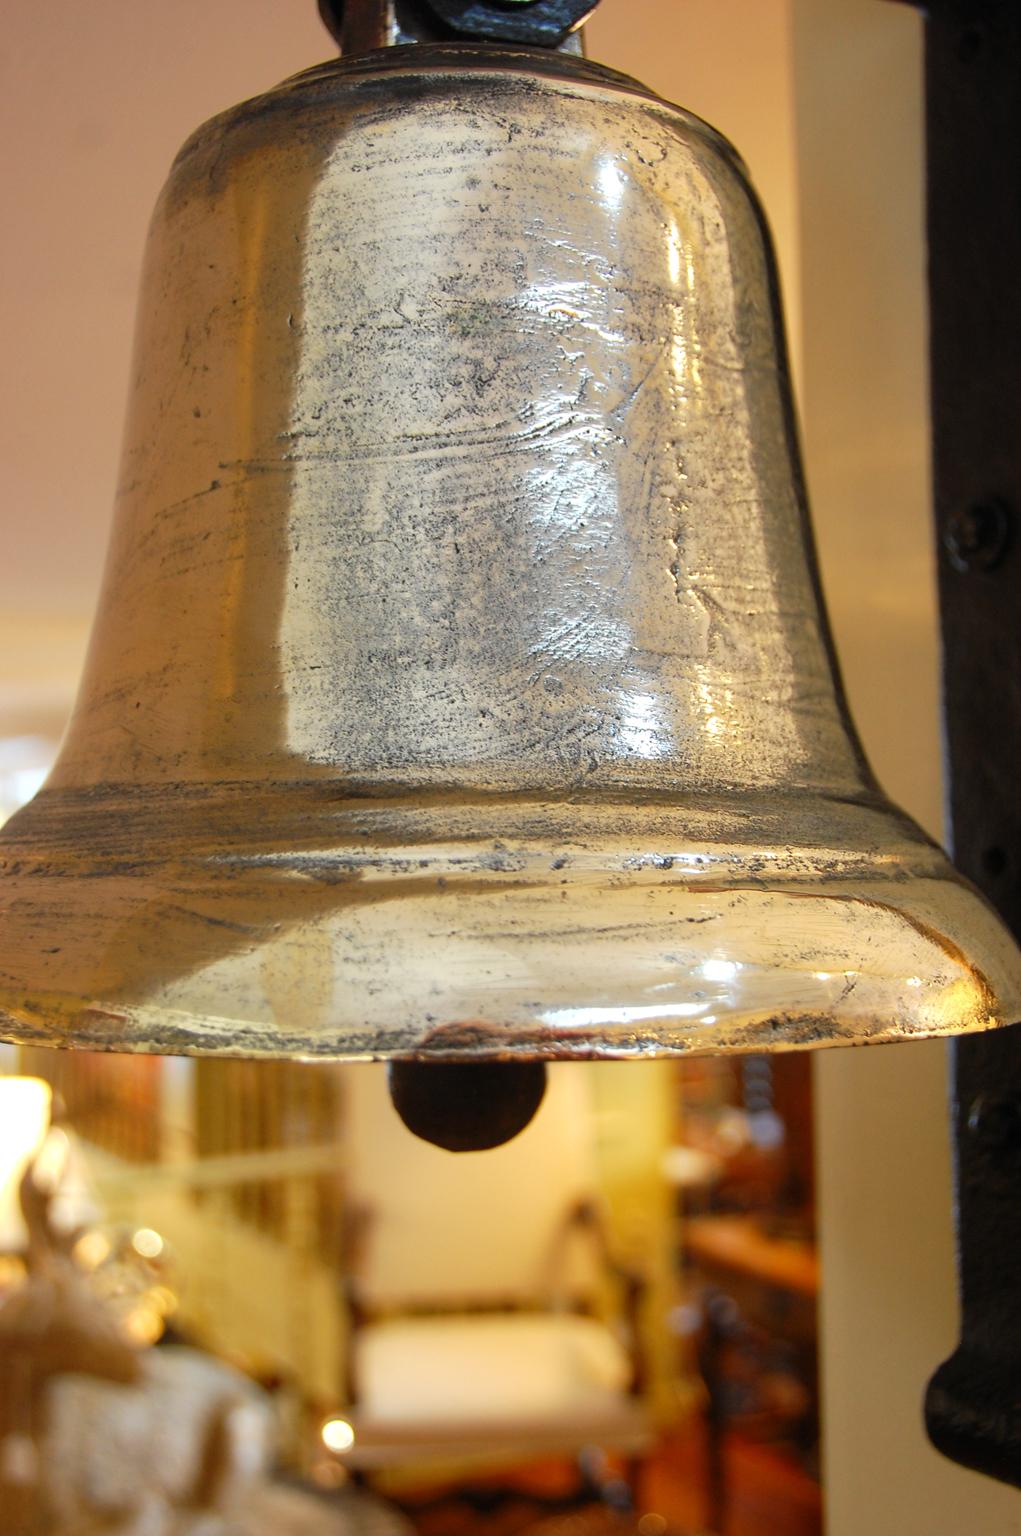 Englische Militär-Hängeglocke aus dem 19. Jahrhundert aus gegossenem Glockenmetall:: mit eisernem Klöppel; ein klarer Klang:: der gut trägt:: macht sie zu einer Freude. Die Halterung für die Glocke wurde aus einem amerikanischen Scheunentorscharnier